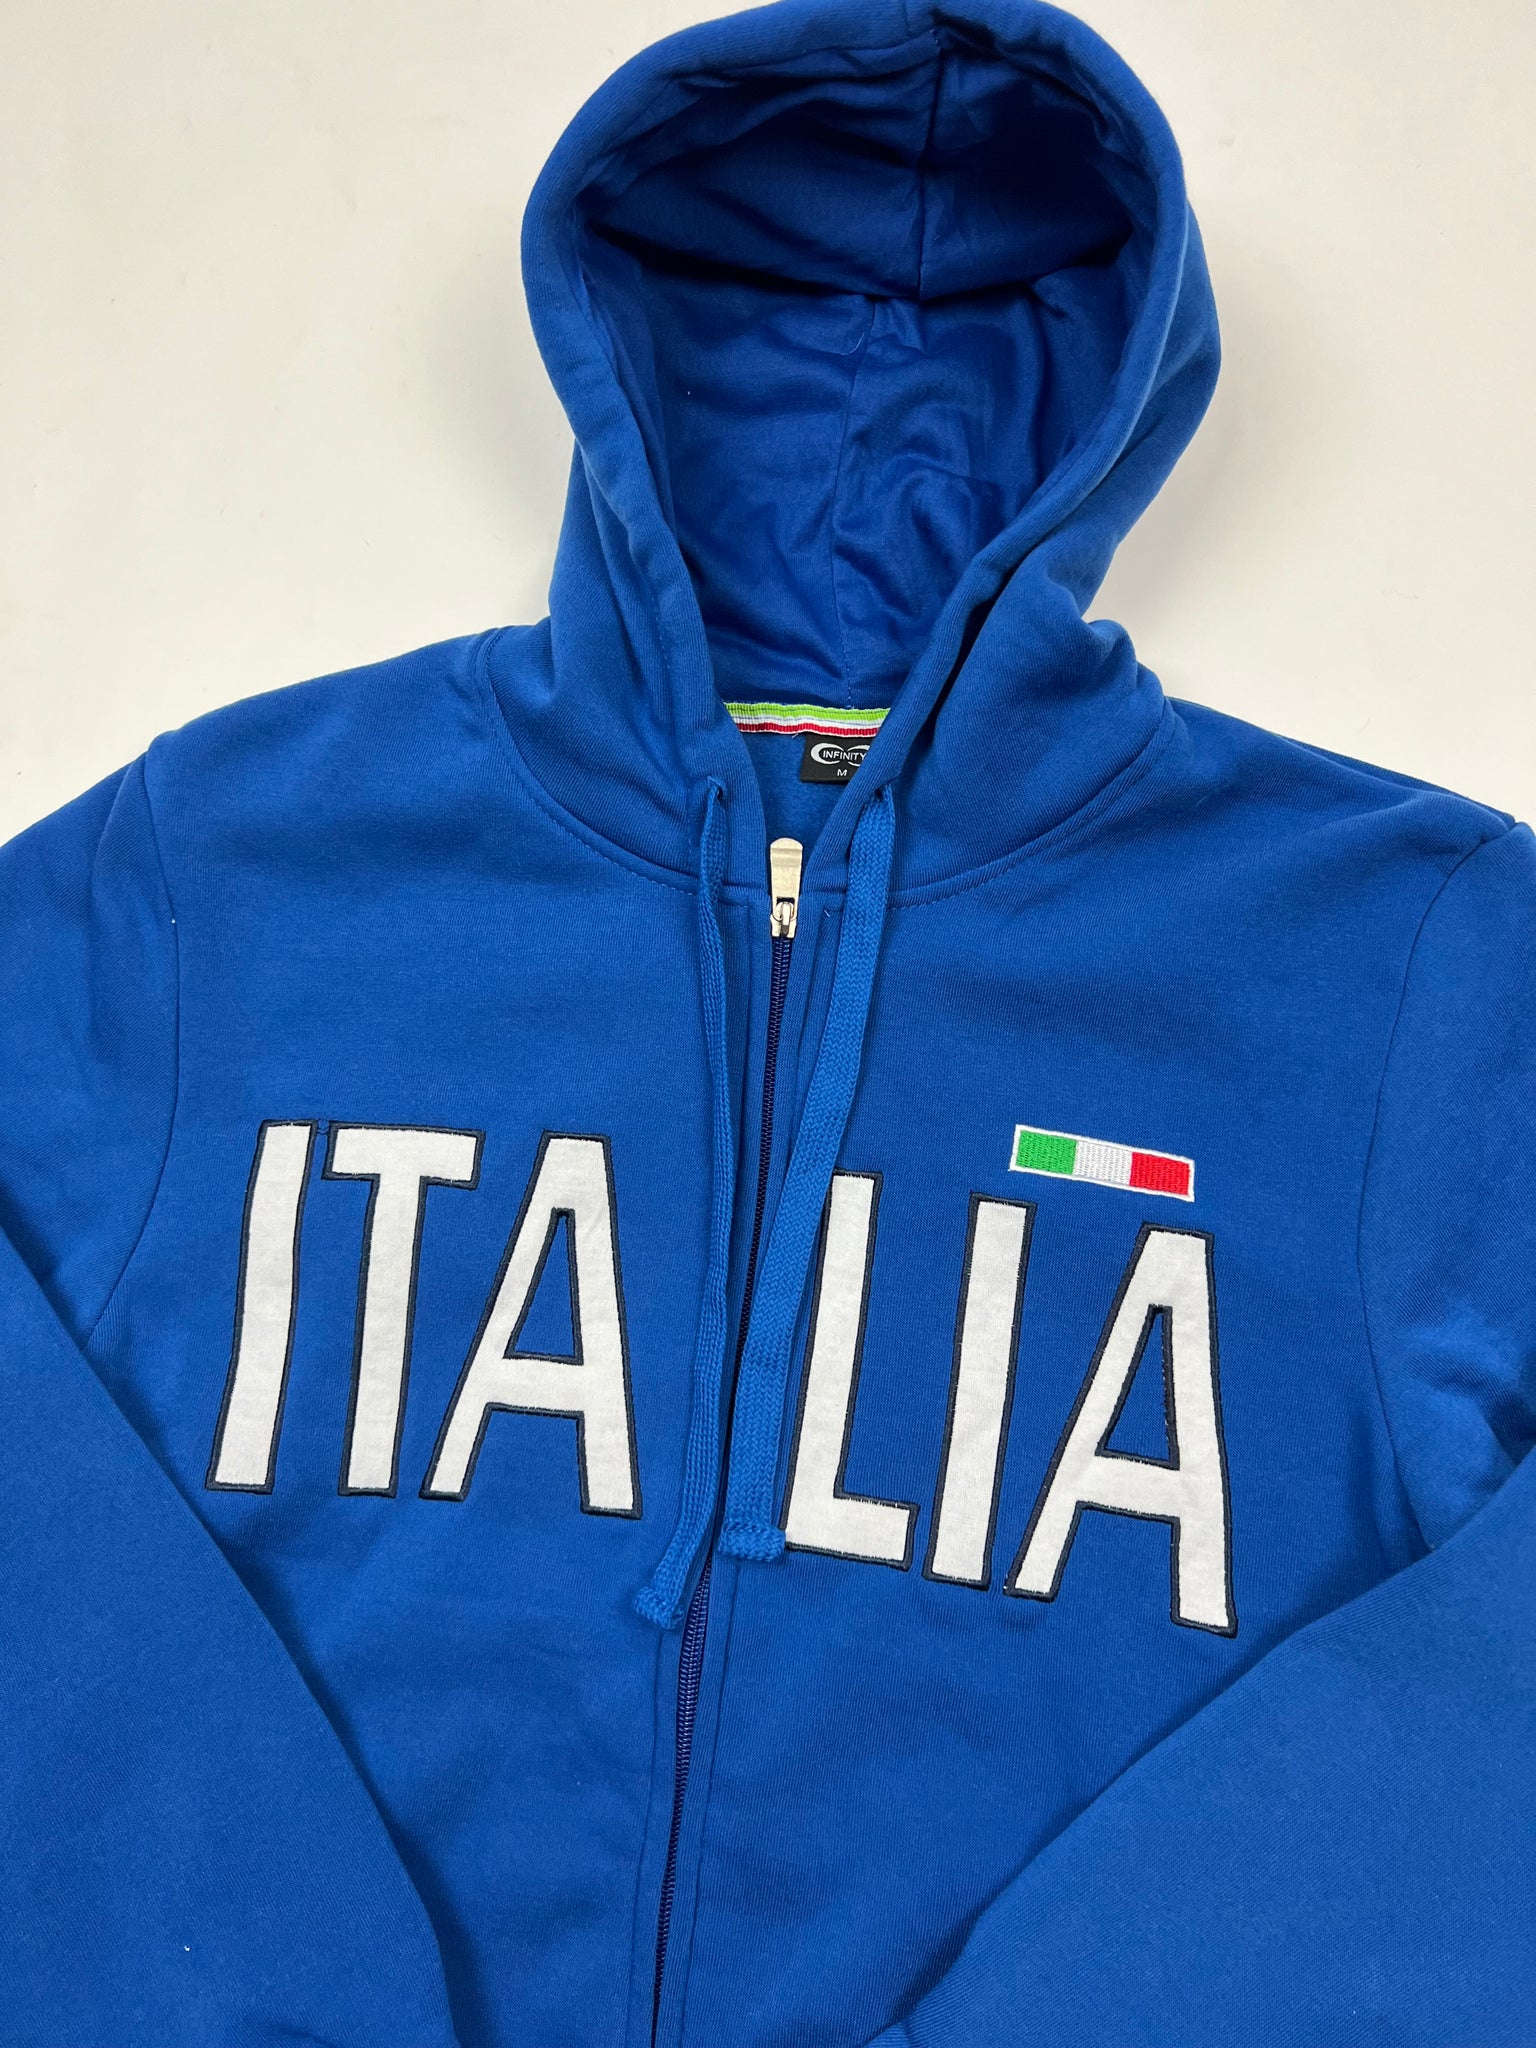 Italia Zip Up (M)